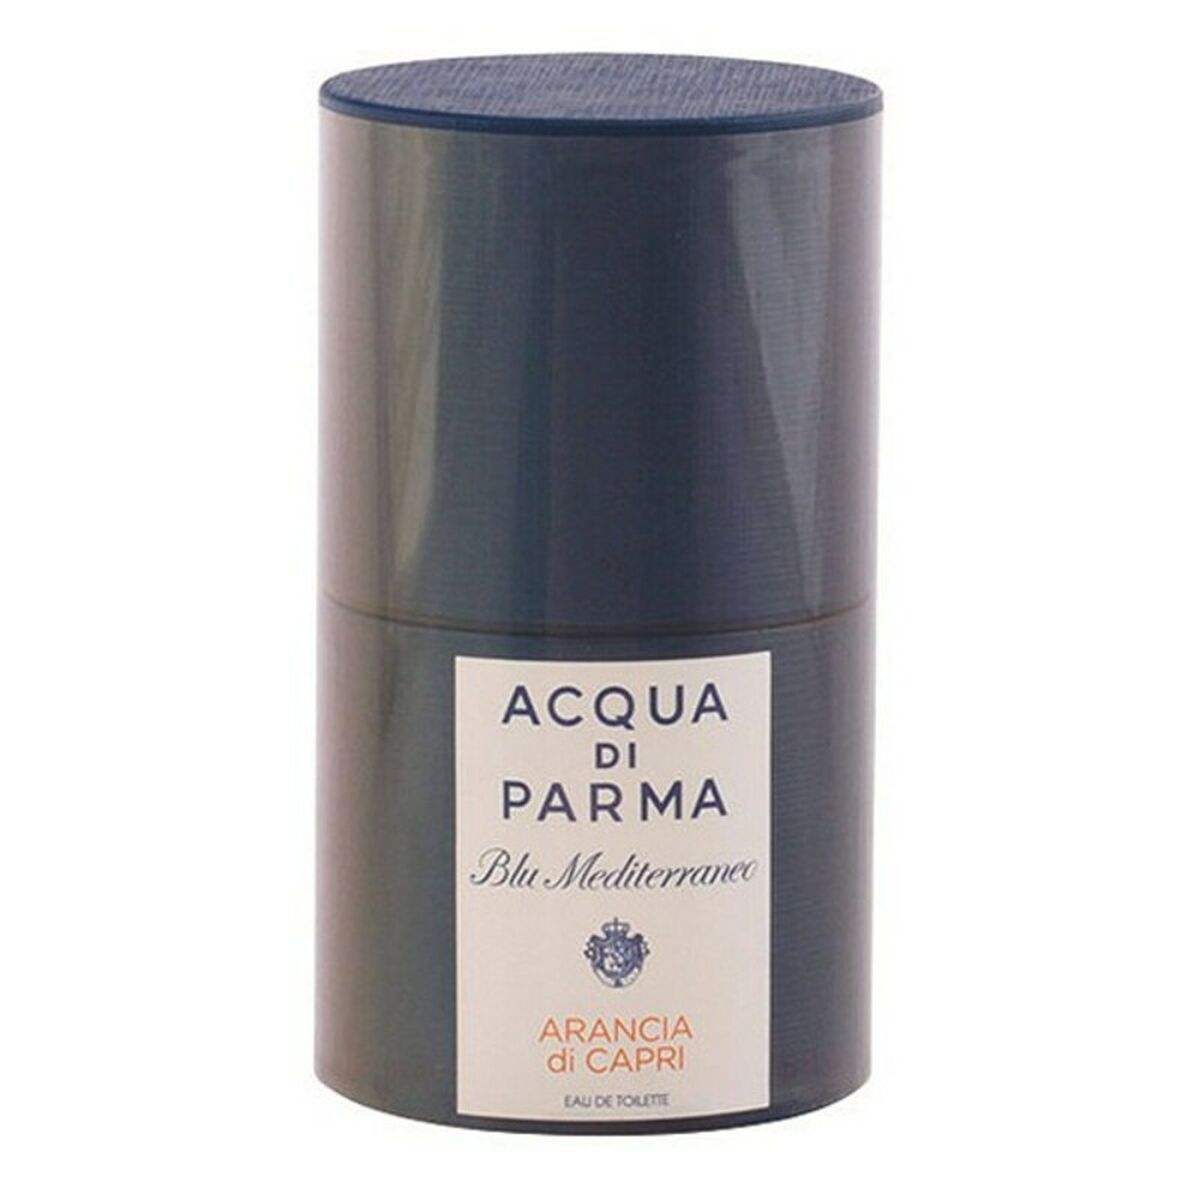 Parfum Homme Acqua Di Parma EDT Blu mediterraneo Arancia Di Capri 75 ml